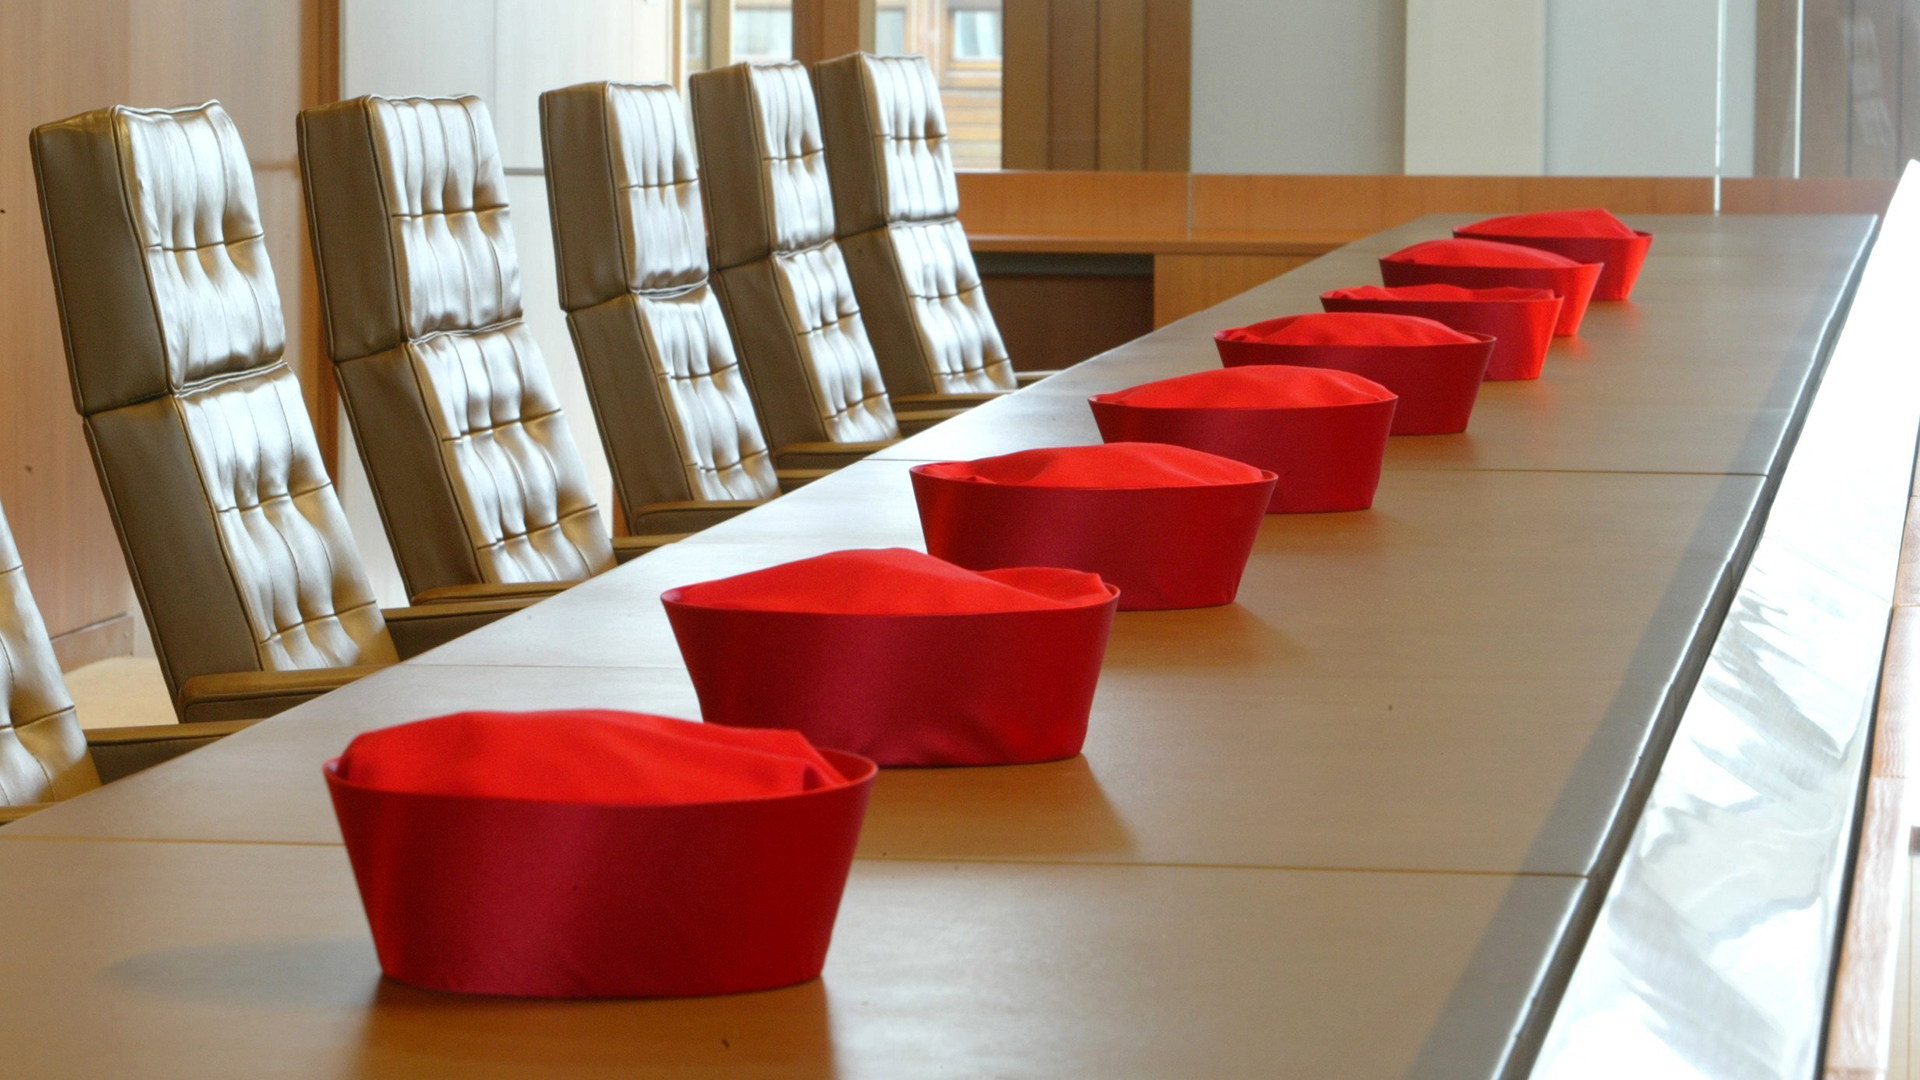 Barette von Richtern des Bundesverfassungsgerichts liegen auf dem Tisch eines Verhandlungssaals | picture-alliance/ dpa